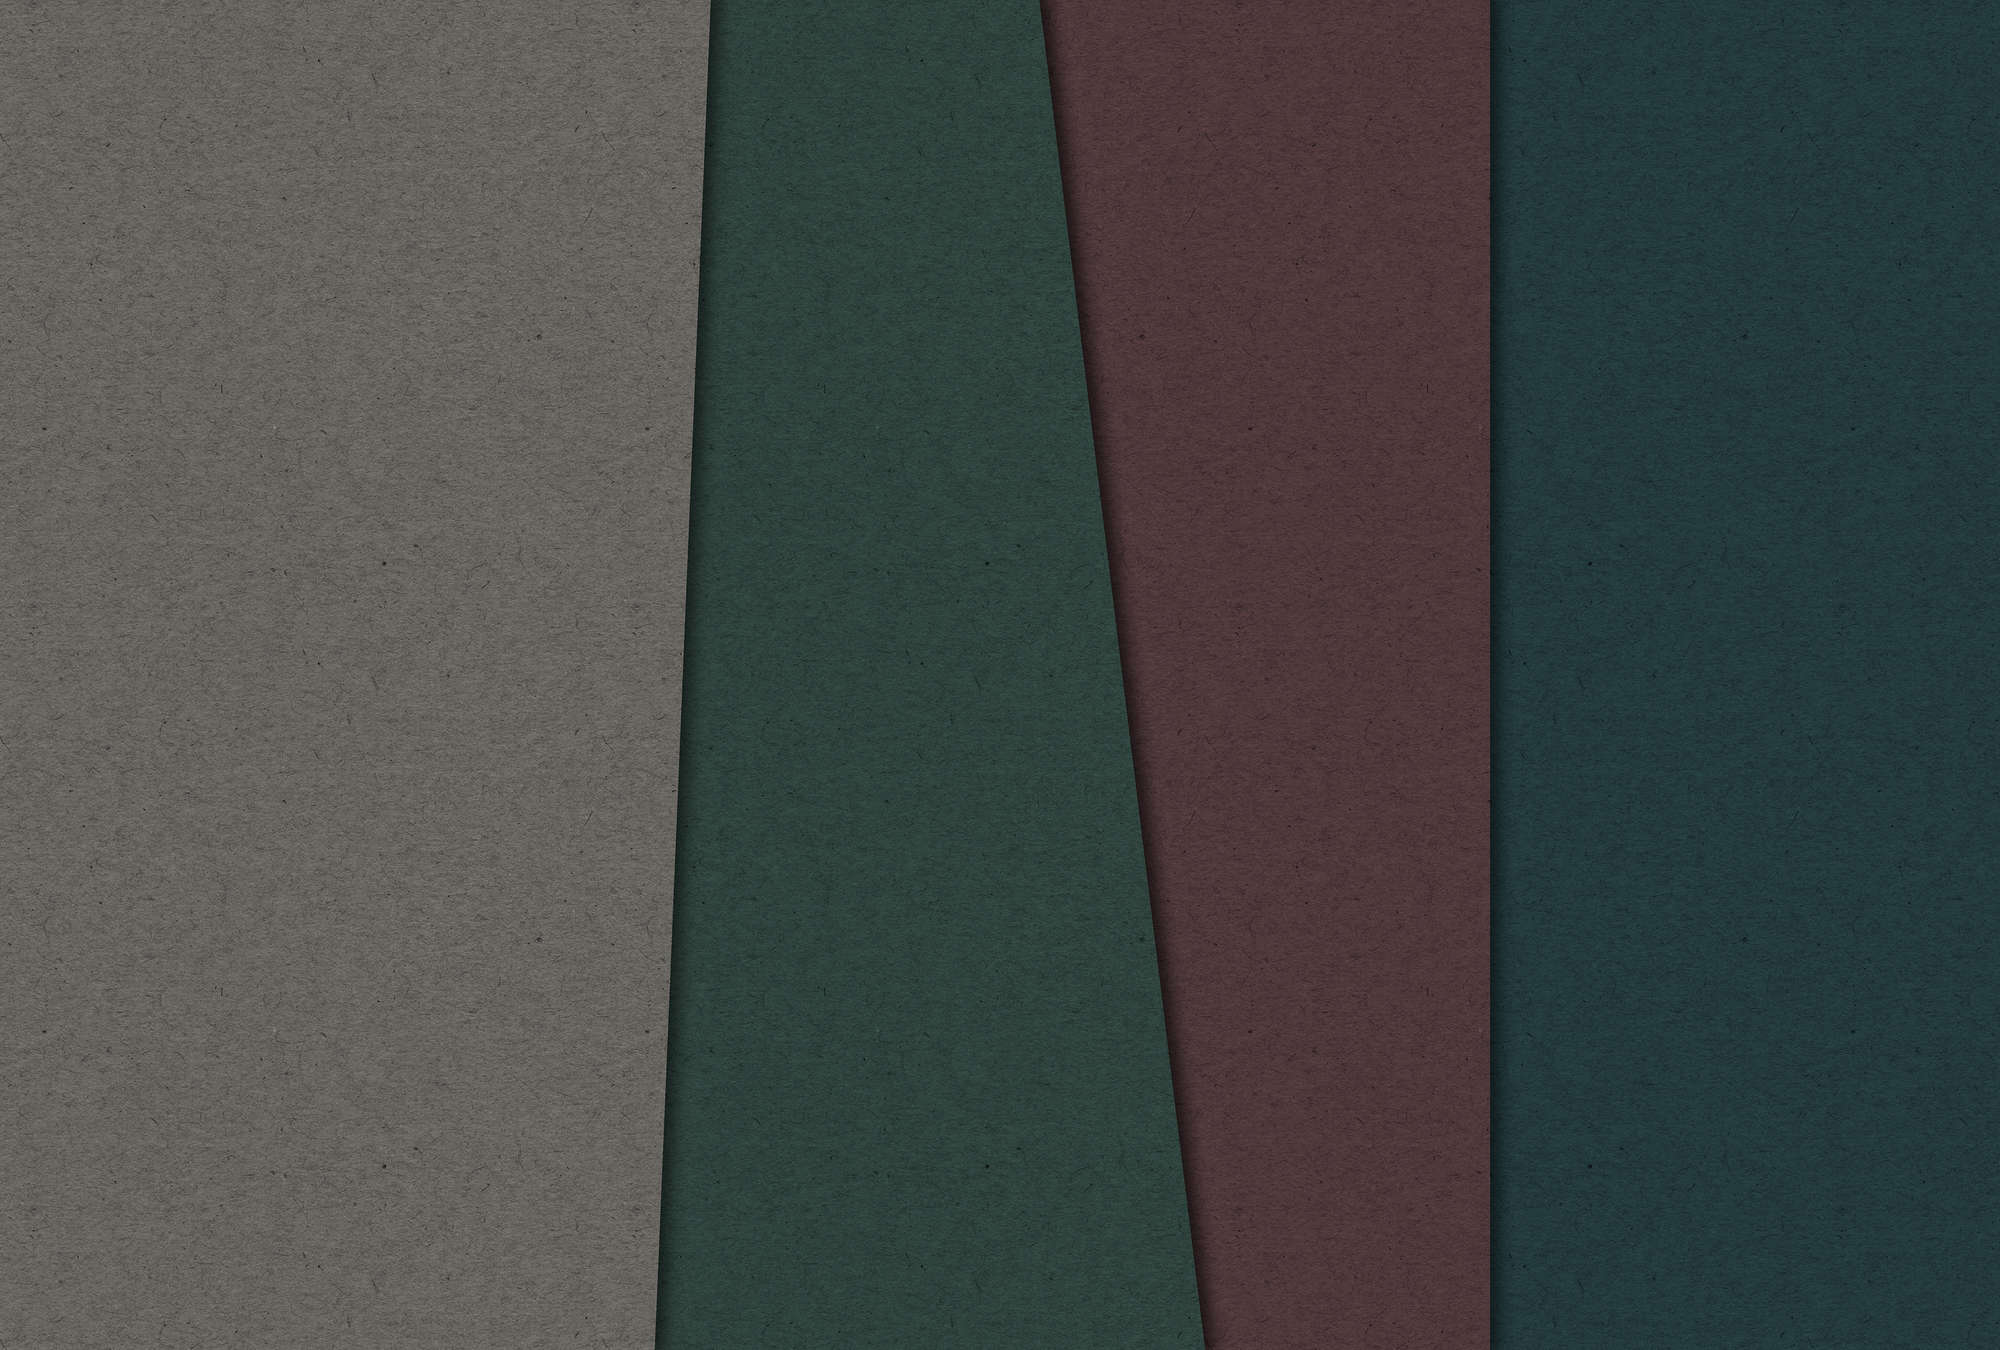             Cartone stratificato 1 - Fotomurali con aree di colore scuro nella struttura del cartone - Marrone, Verde | Perla liscio
        